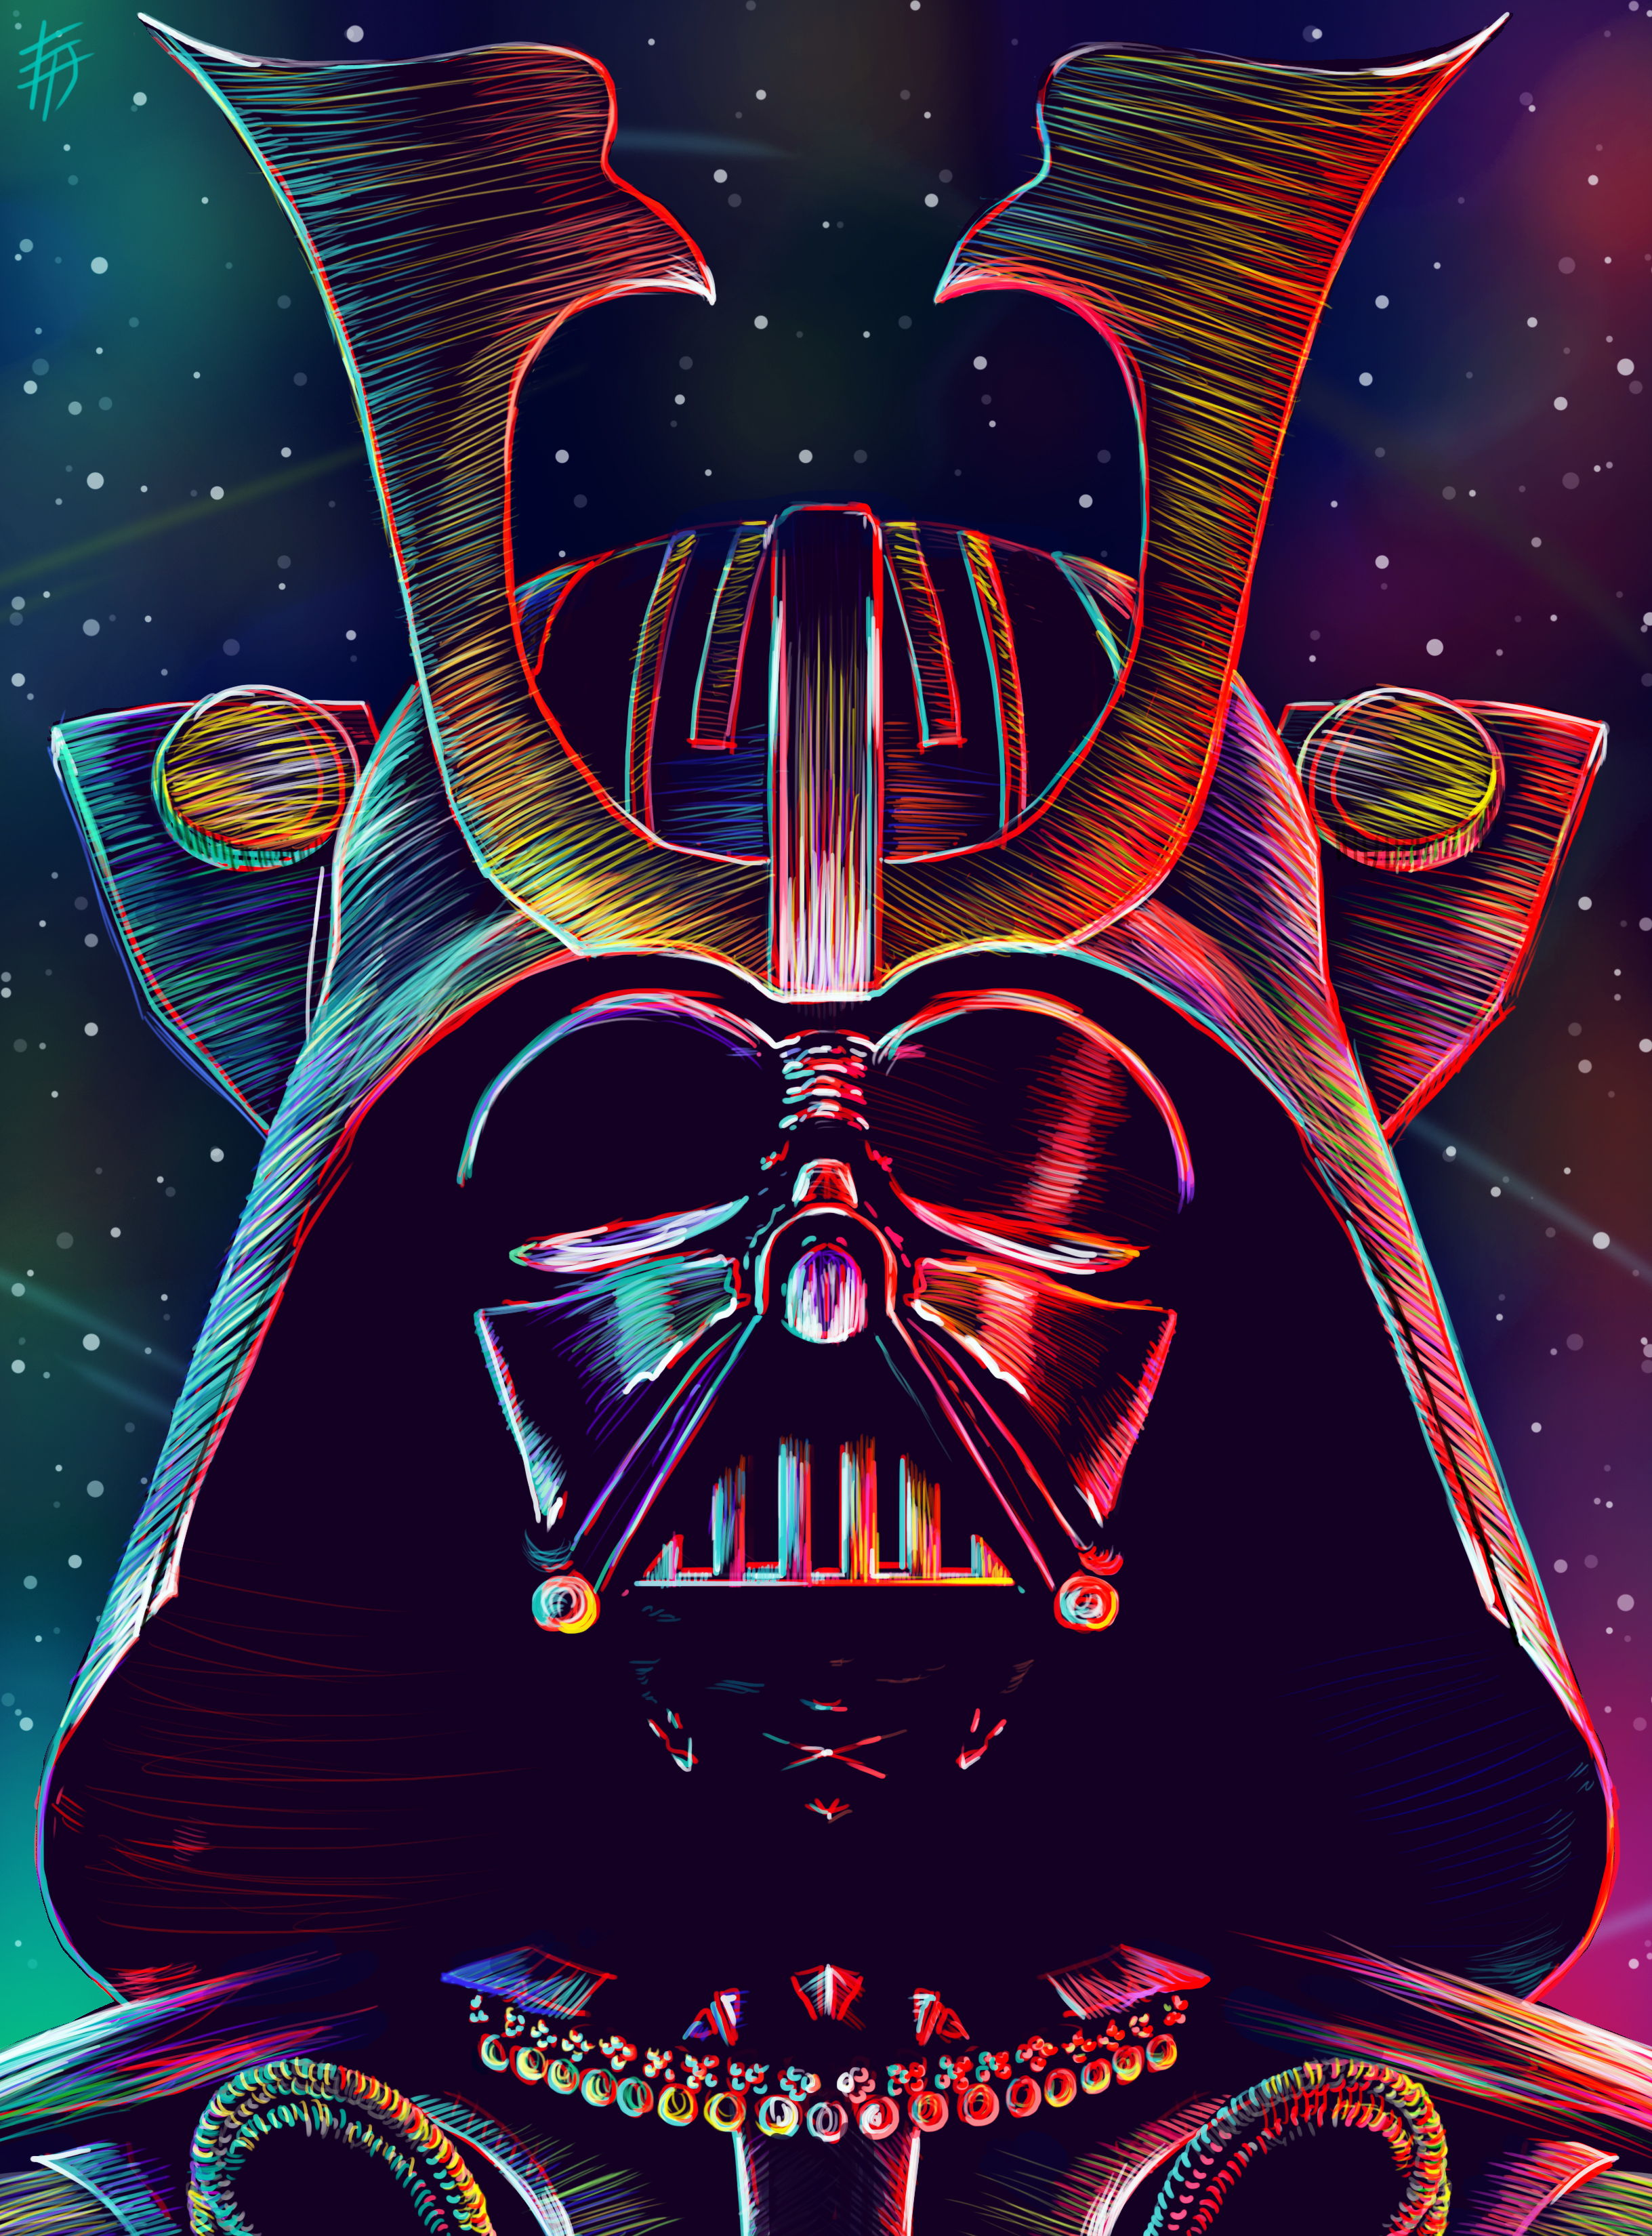 Darth Vader Supervillain 4k, HD Movies, 4k Wallpapers